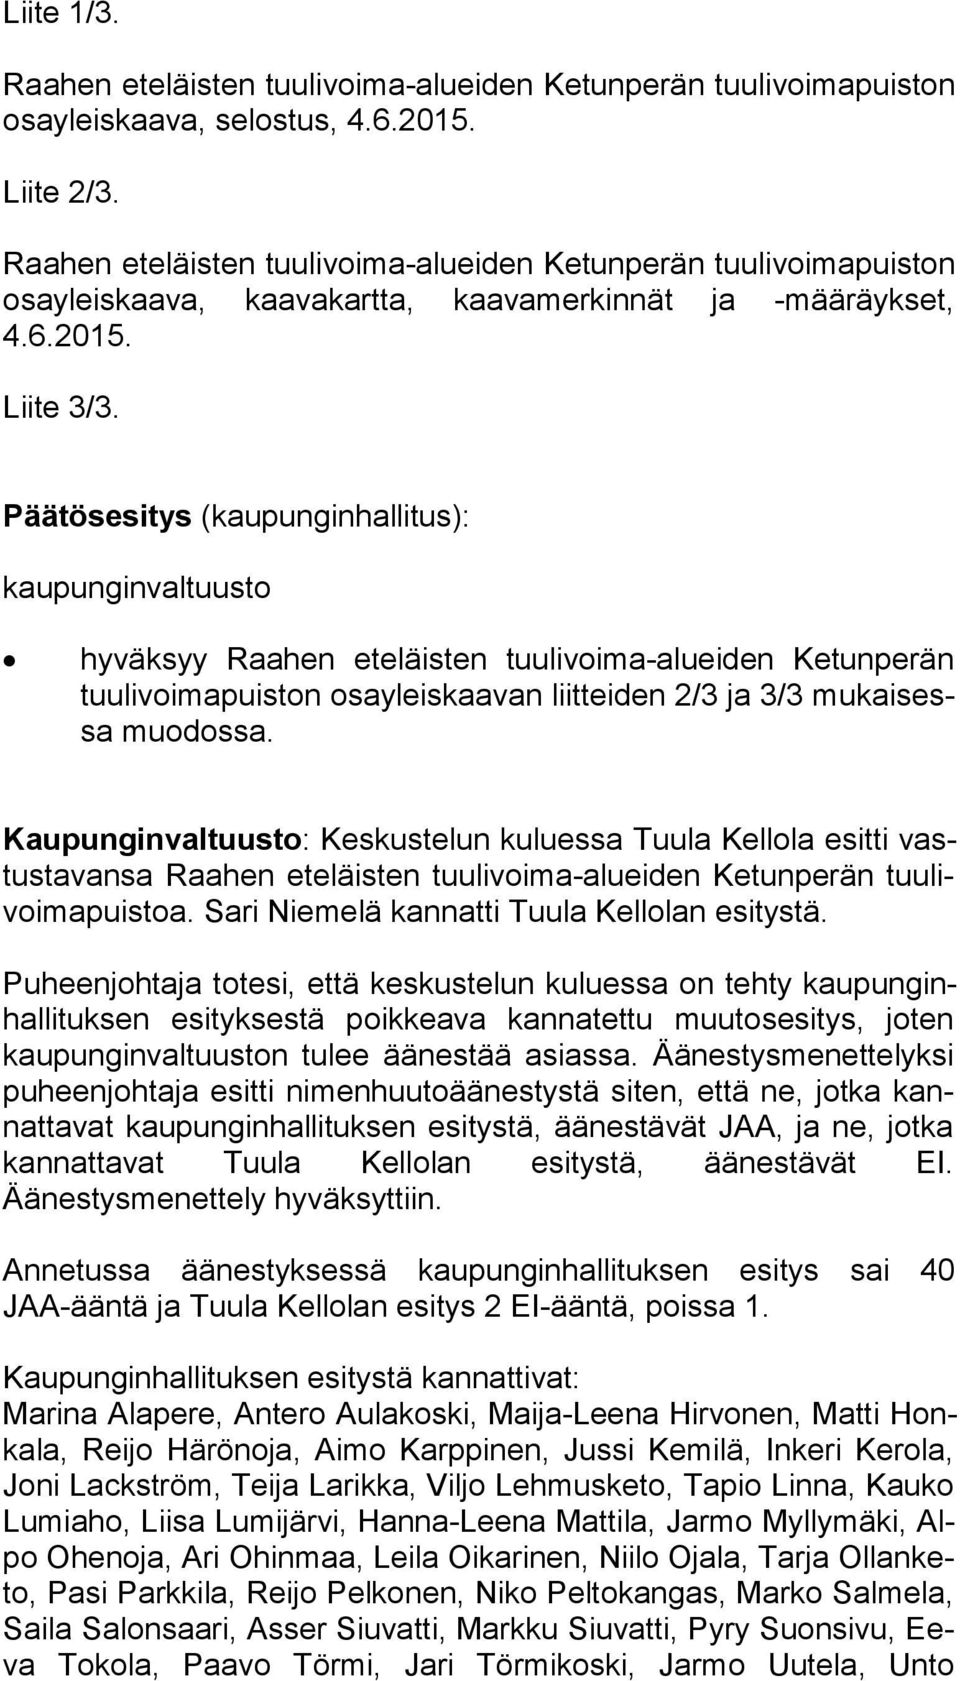 Päätösesitys (kaupunginhallitus): kaupunginvaltuusto hyväksyy Raahen eteläisten tuulivoima-alueiden Ketunperän tuu li voi ma puis ton osayleiskaavan liitteiden 2/3 ja 3/3 mu kai sessa muo dos sa.